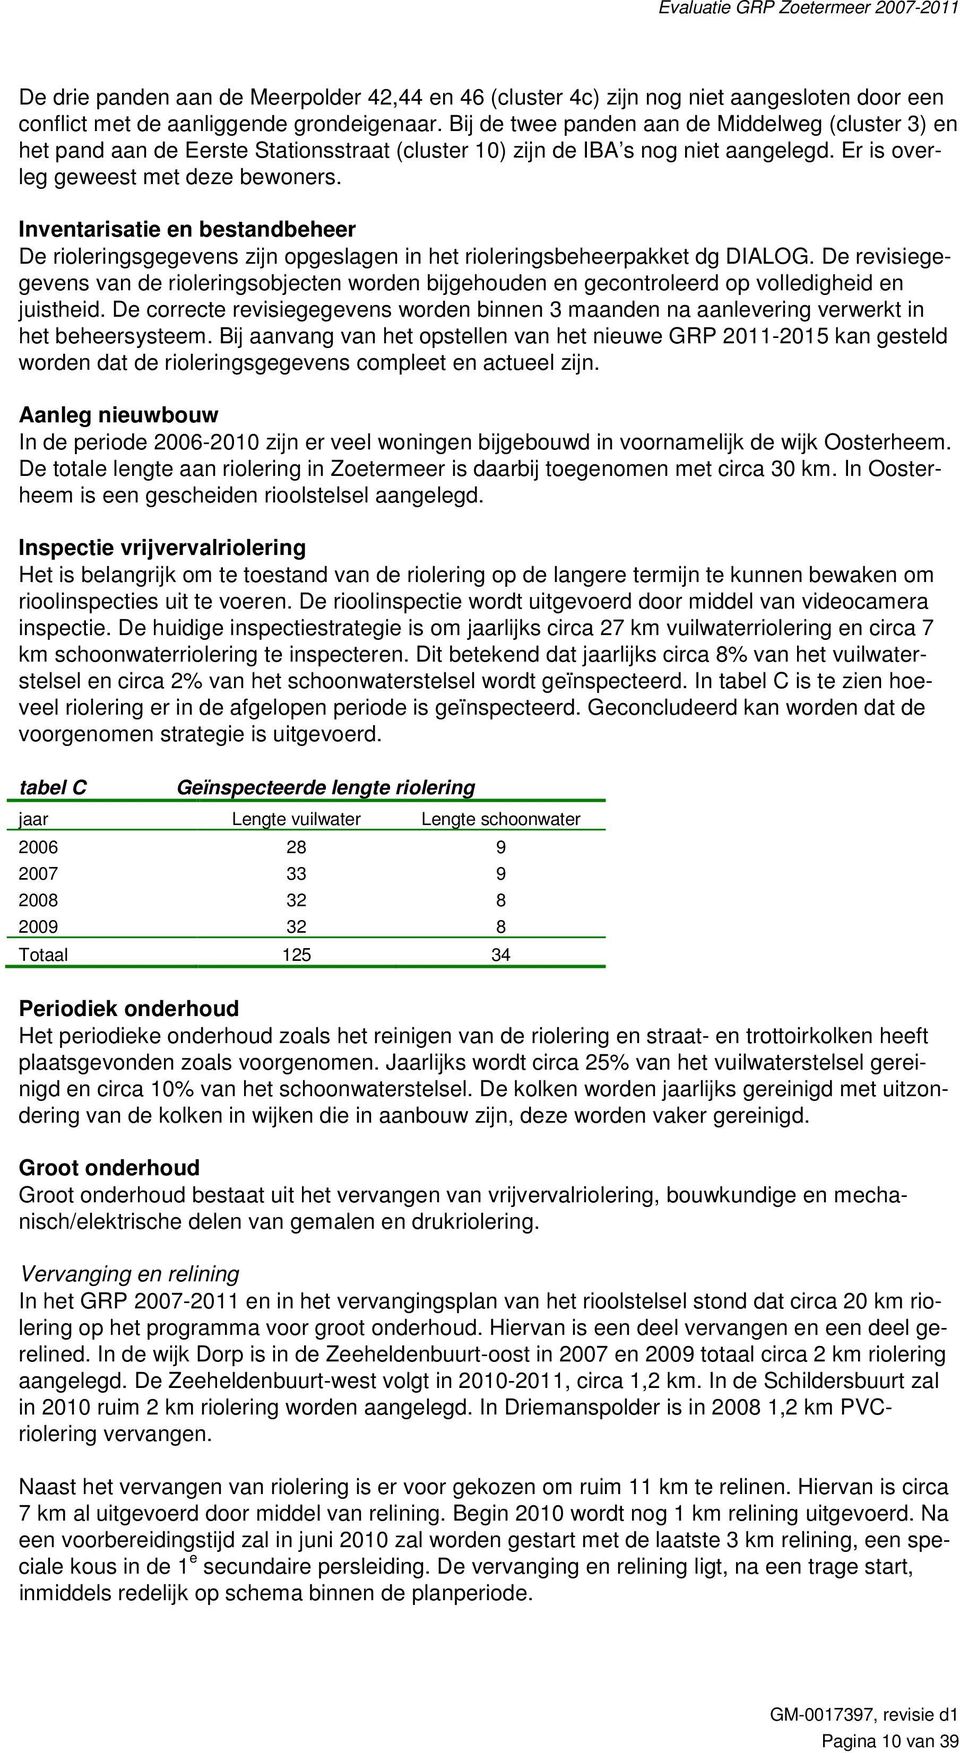 Inventarisatie en bestandbeheer De rioleringsgegevens zijn opgeslagen in het rioleringsbeheerpakket dg DIALOG.